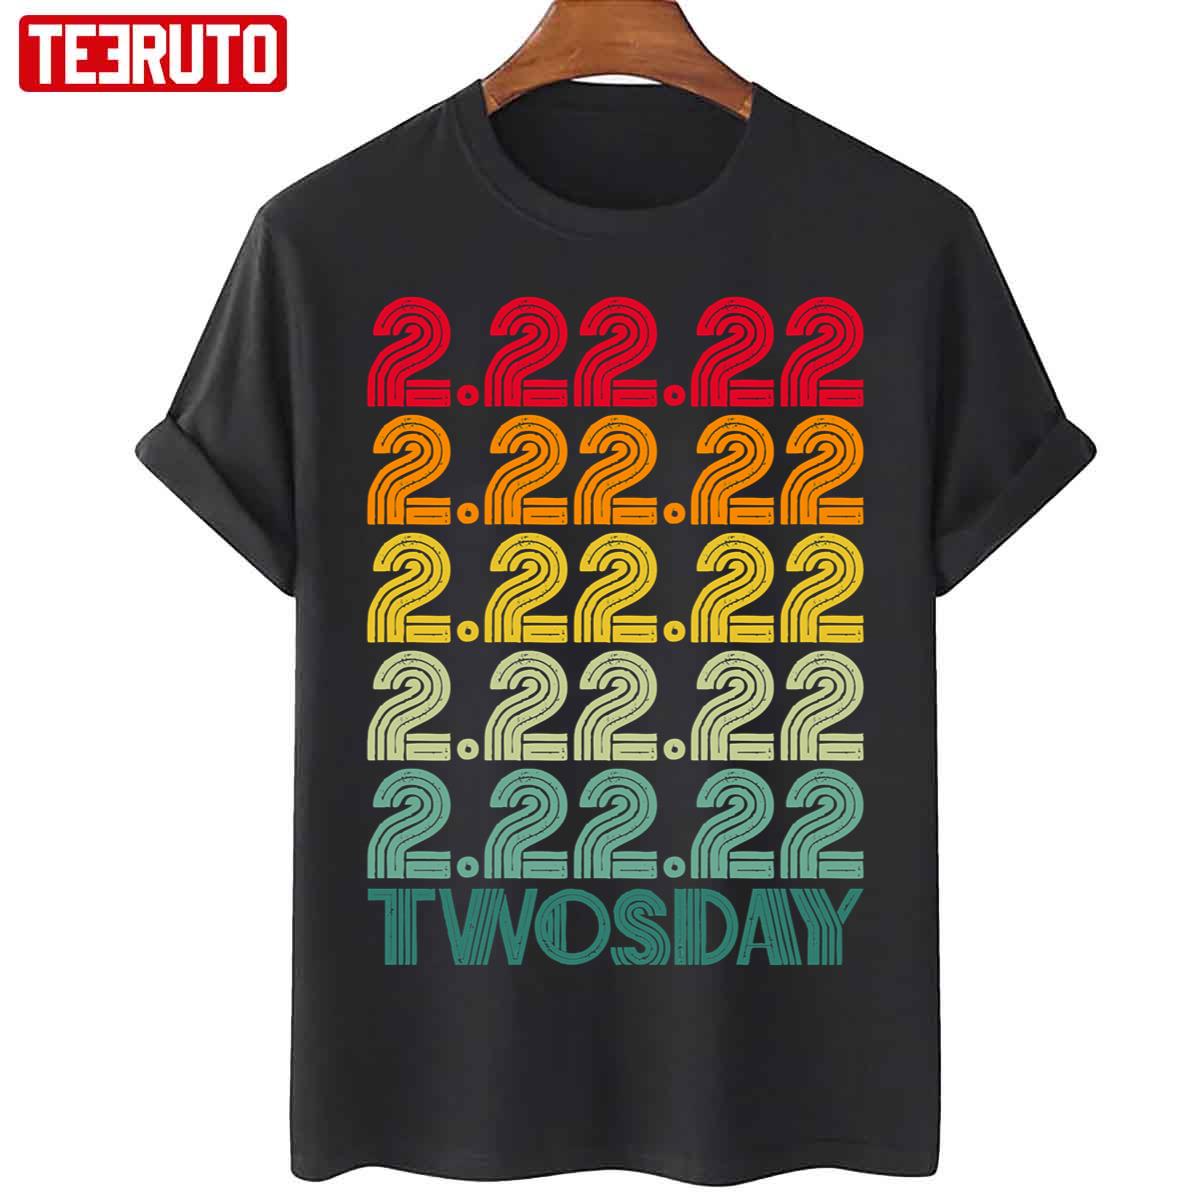 Twosday Tuesday February 22nd 2022 Unisex T-Shirt